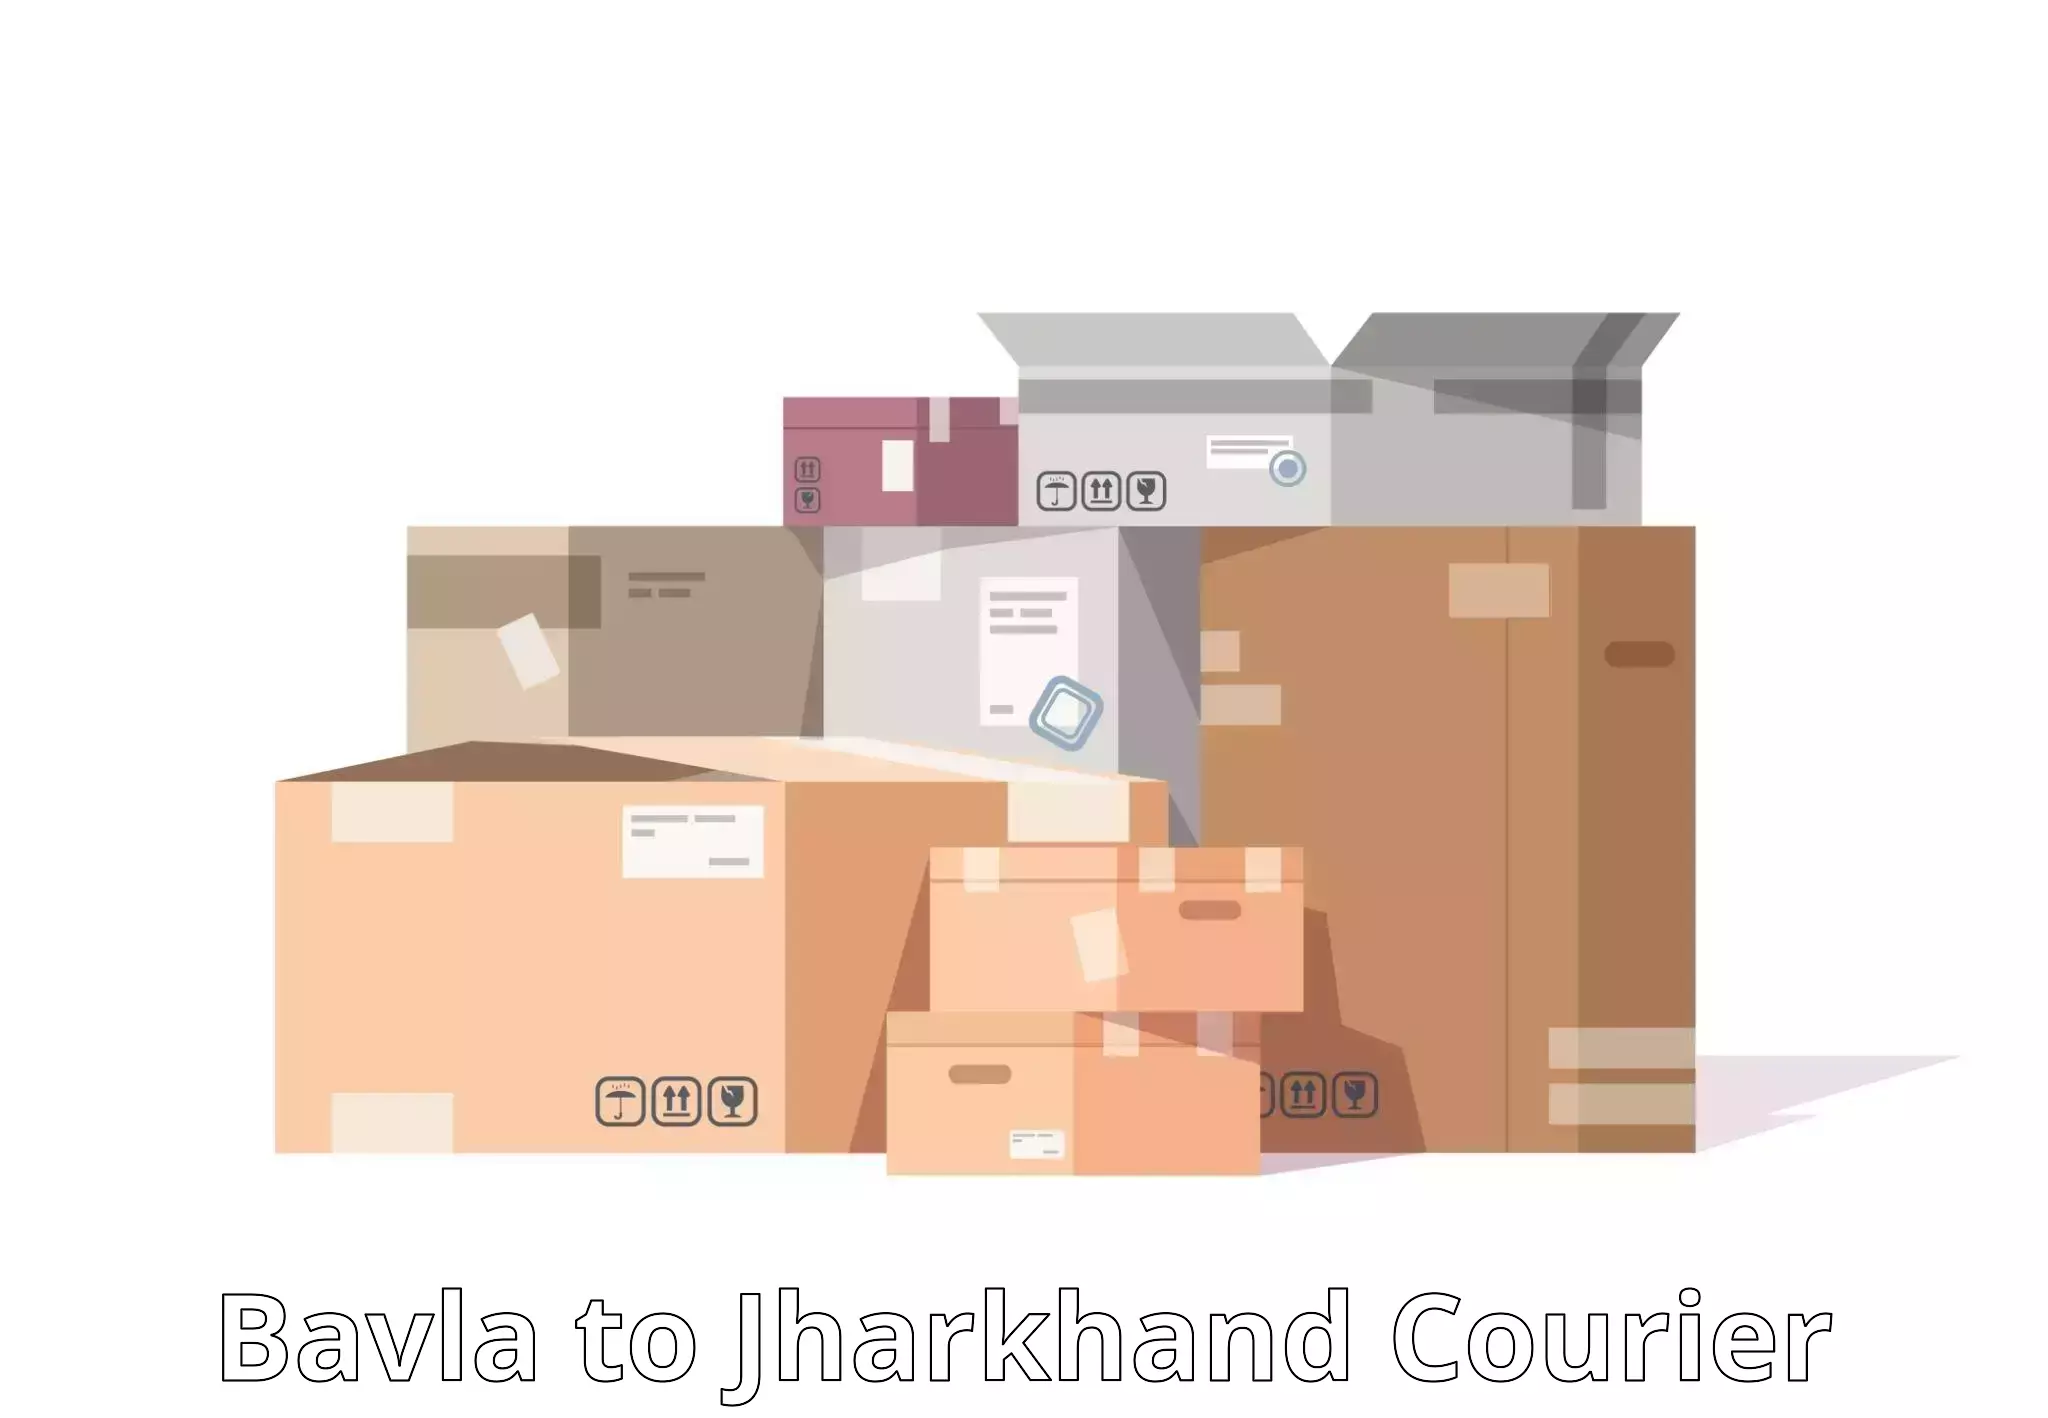 Efficient parcel tracking Bavla to Lohardaga